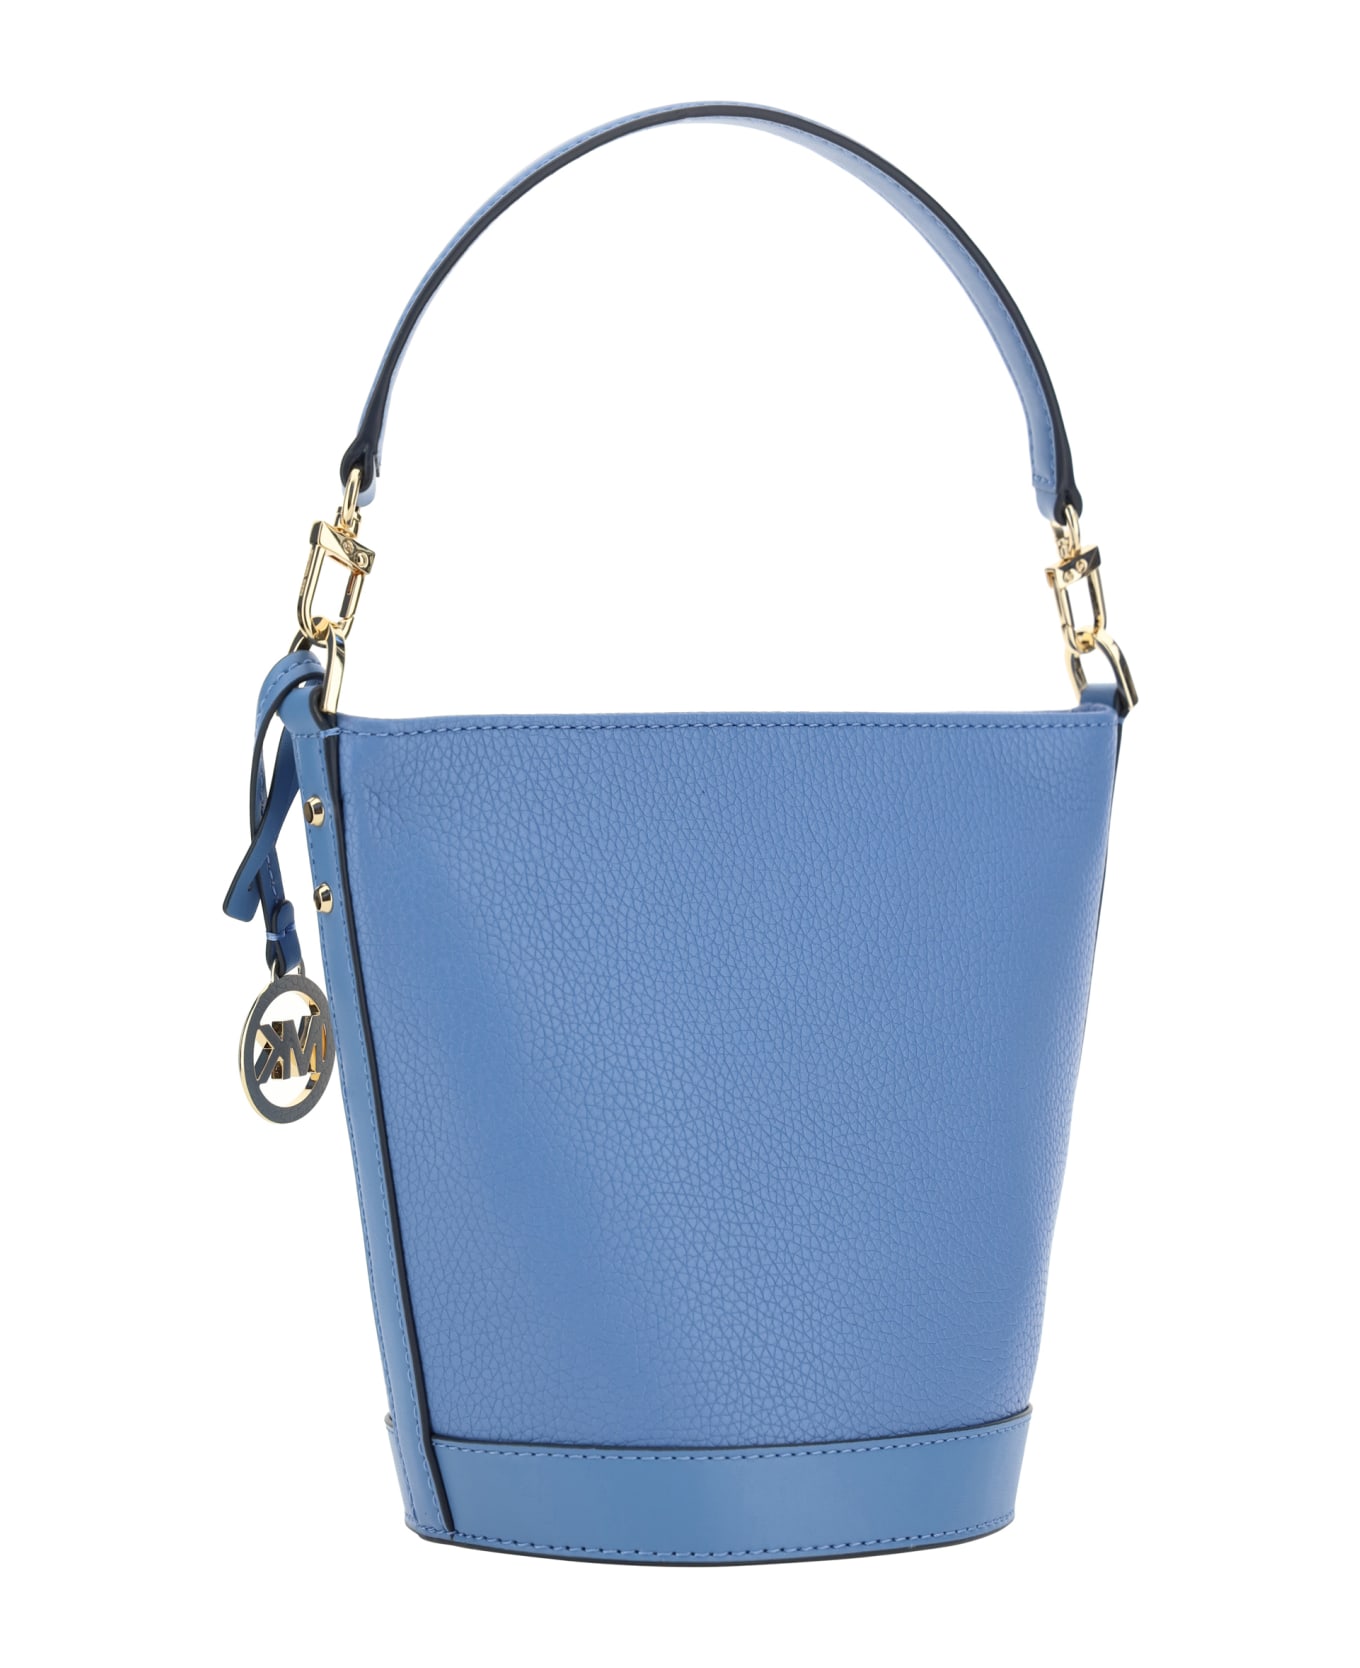 Michael Kors Townsend Bucket Bag - Light Blue